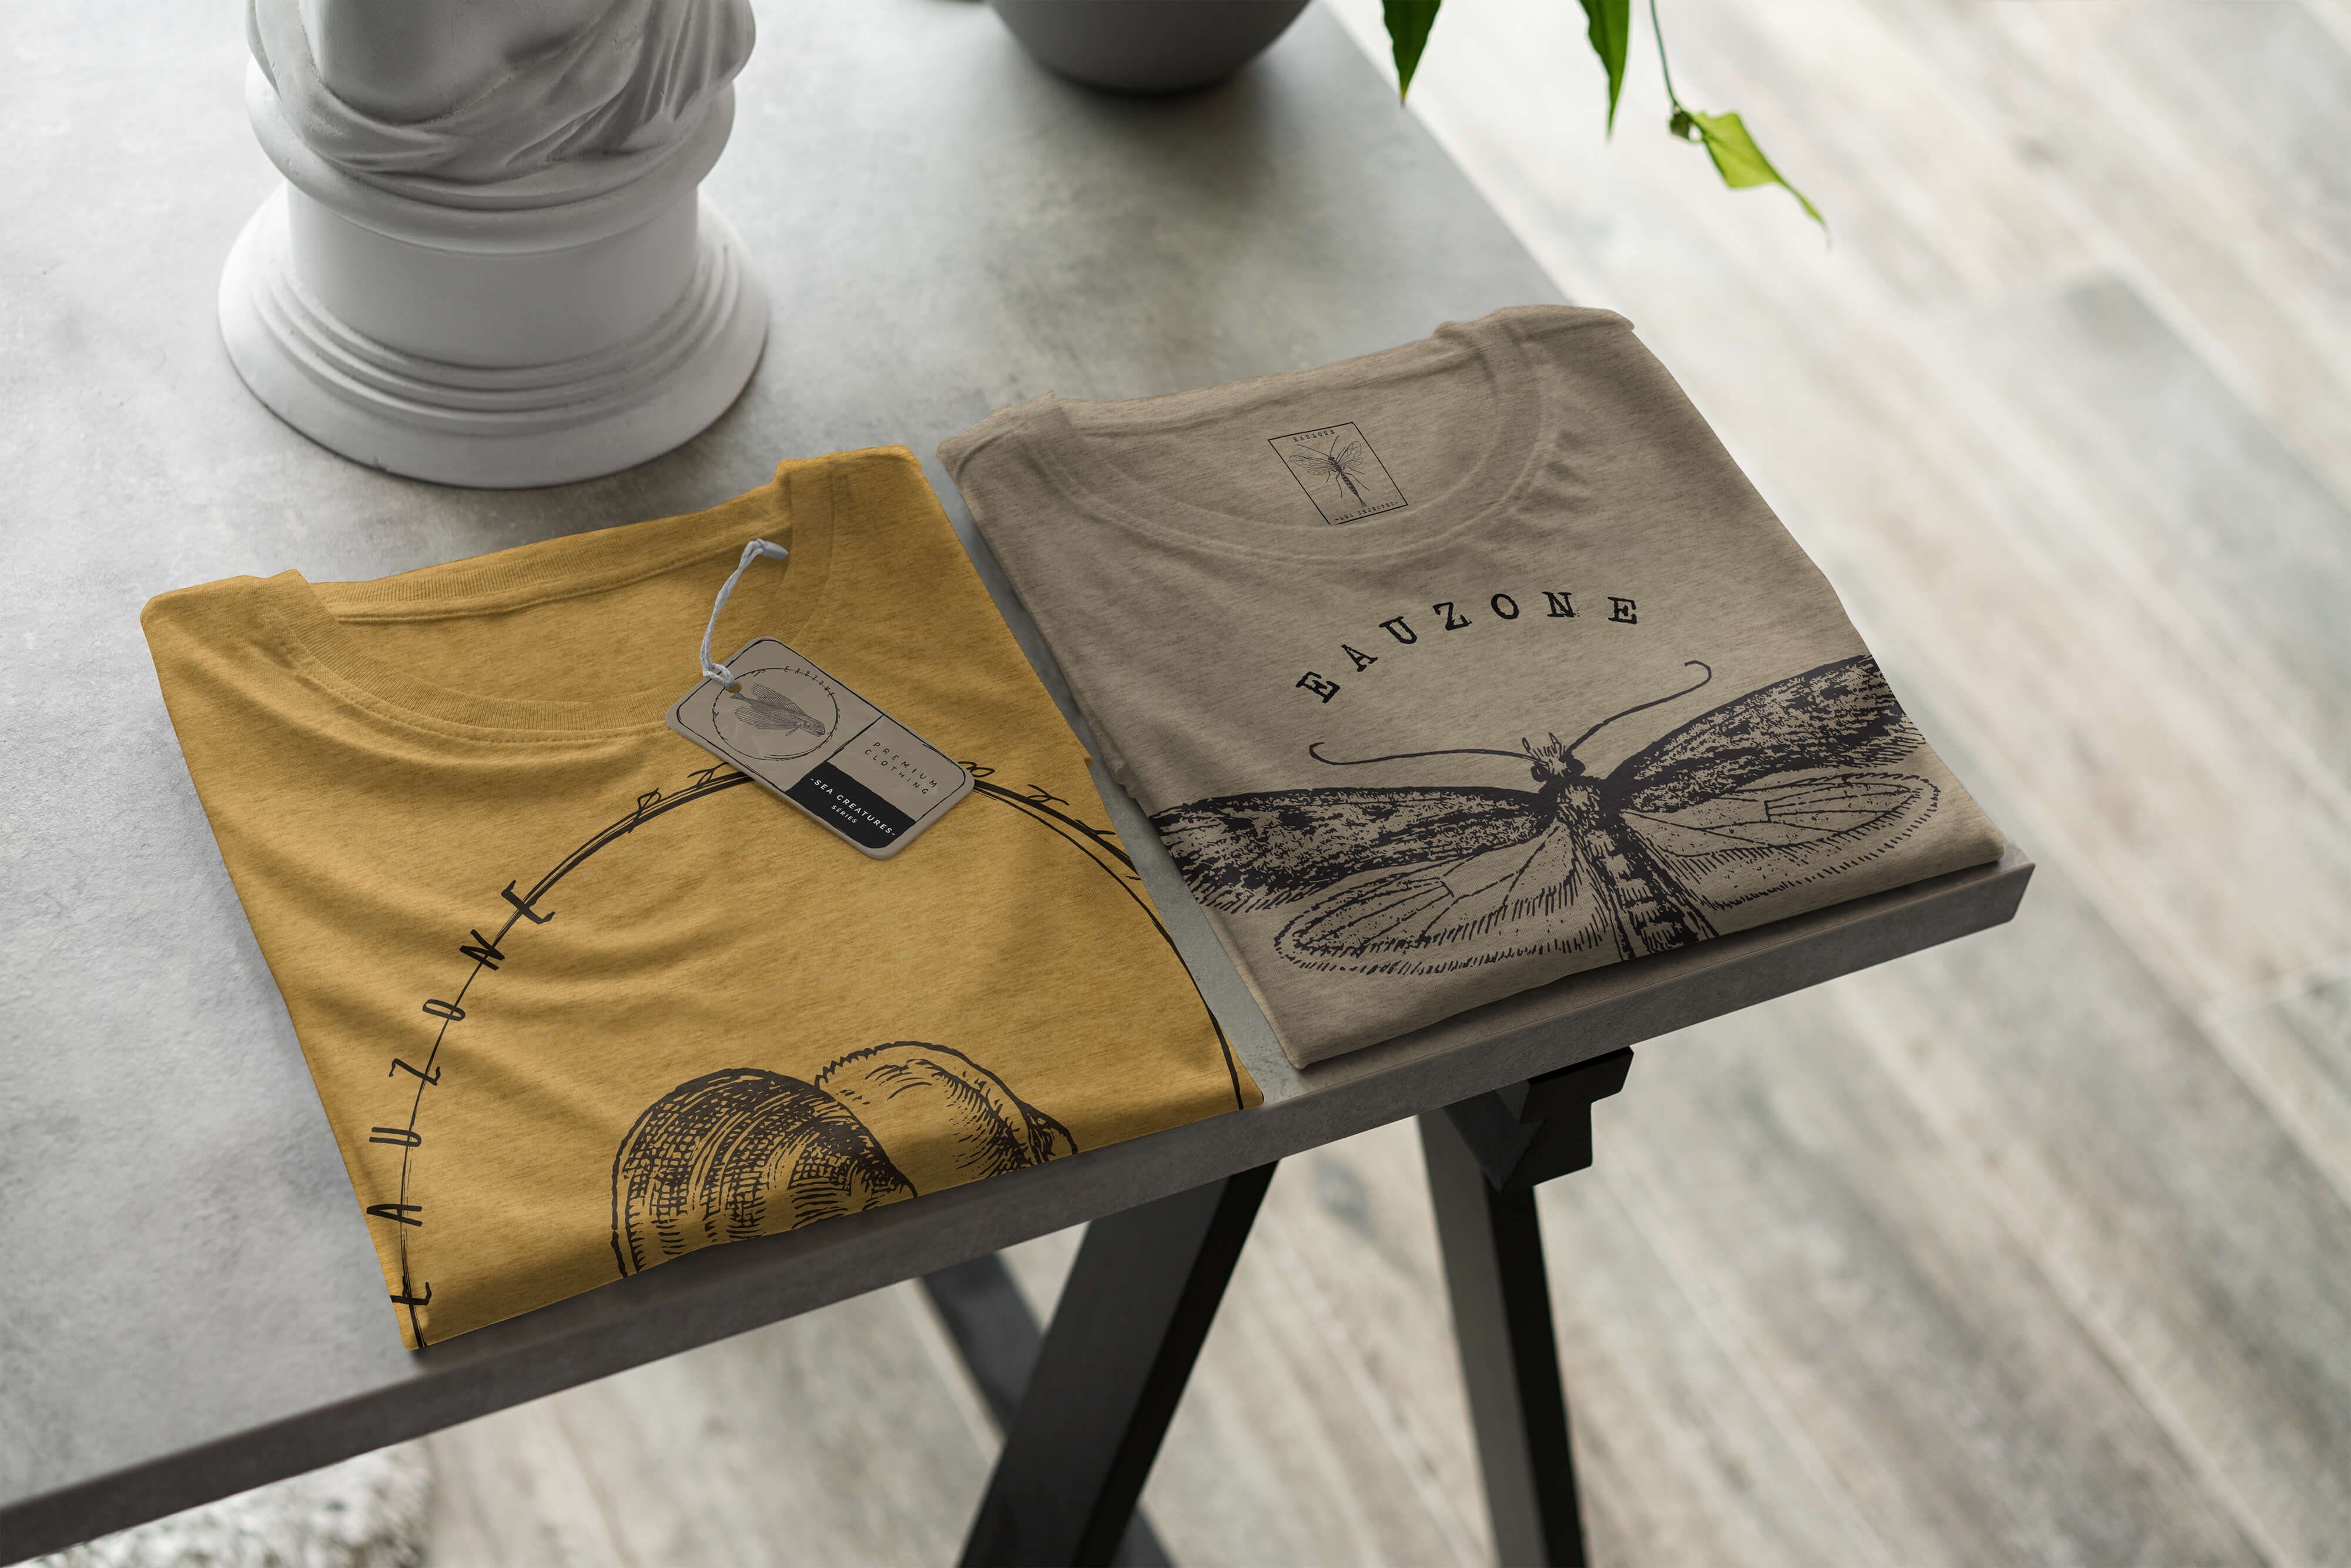 Creatures, 010 Struktur Tiefsee Sea Schnitt Gold Sea feine T-Shirt Art / Fische T-Shirt sportlicher - Antique Serie: Sinus und